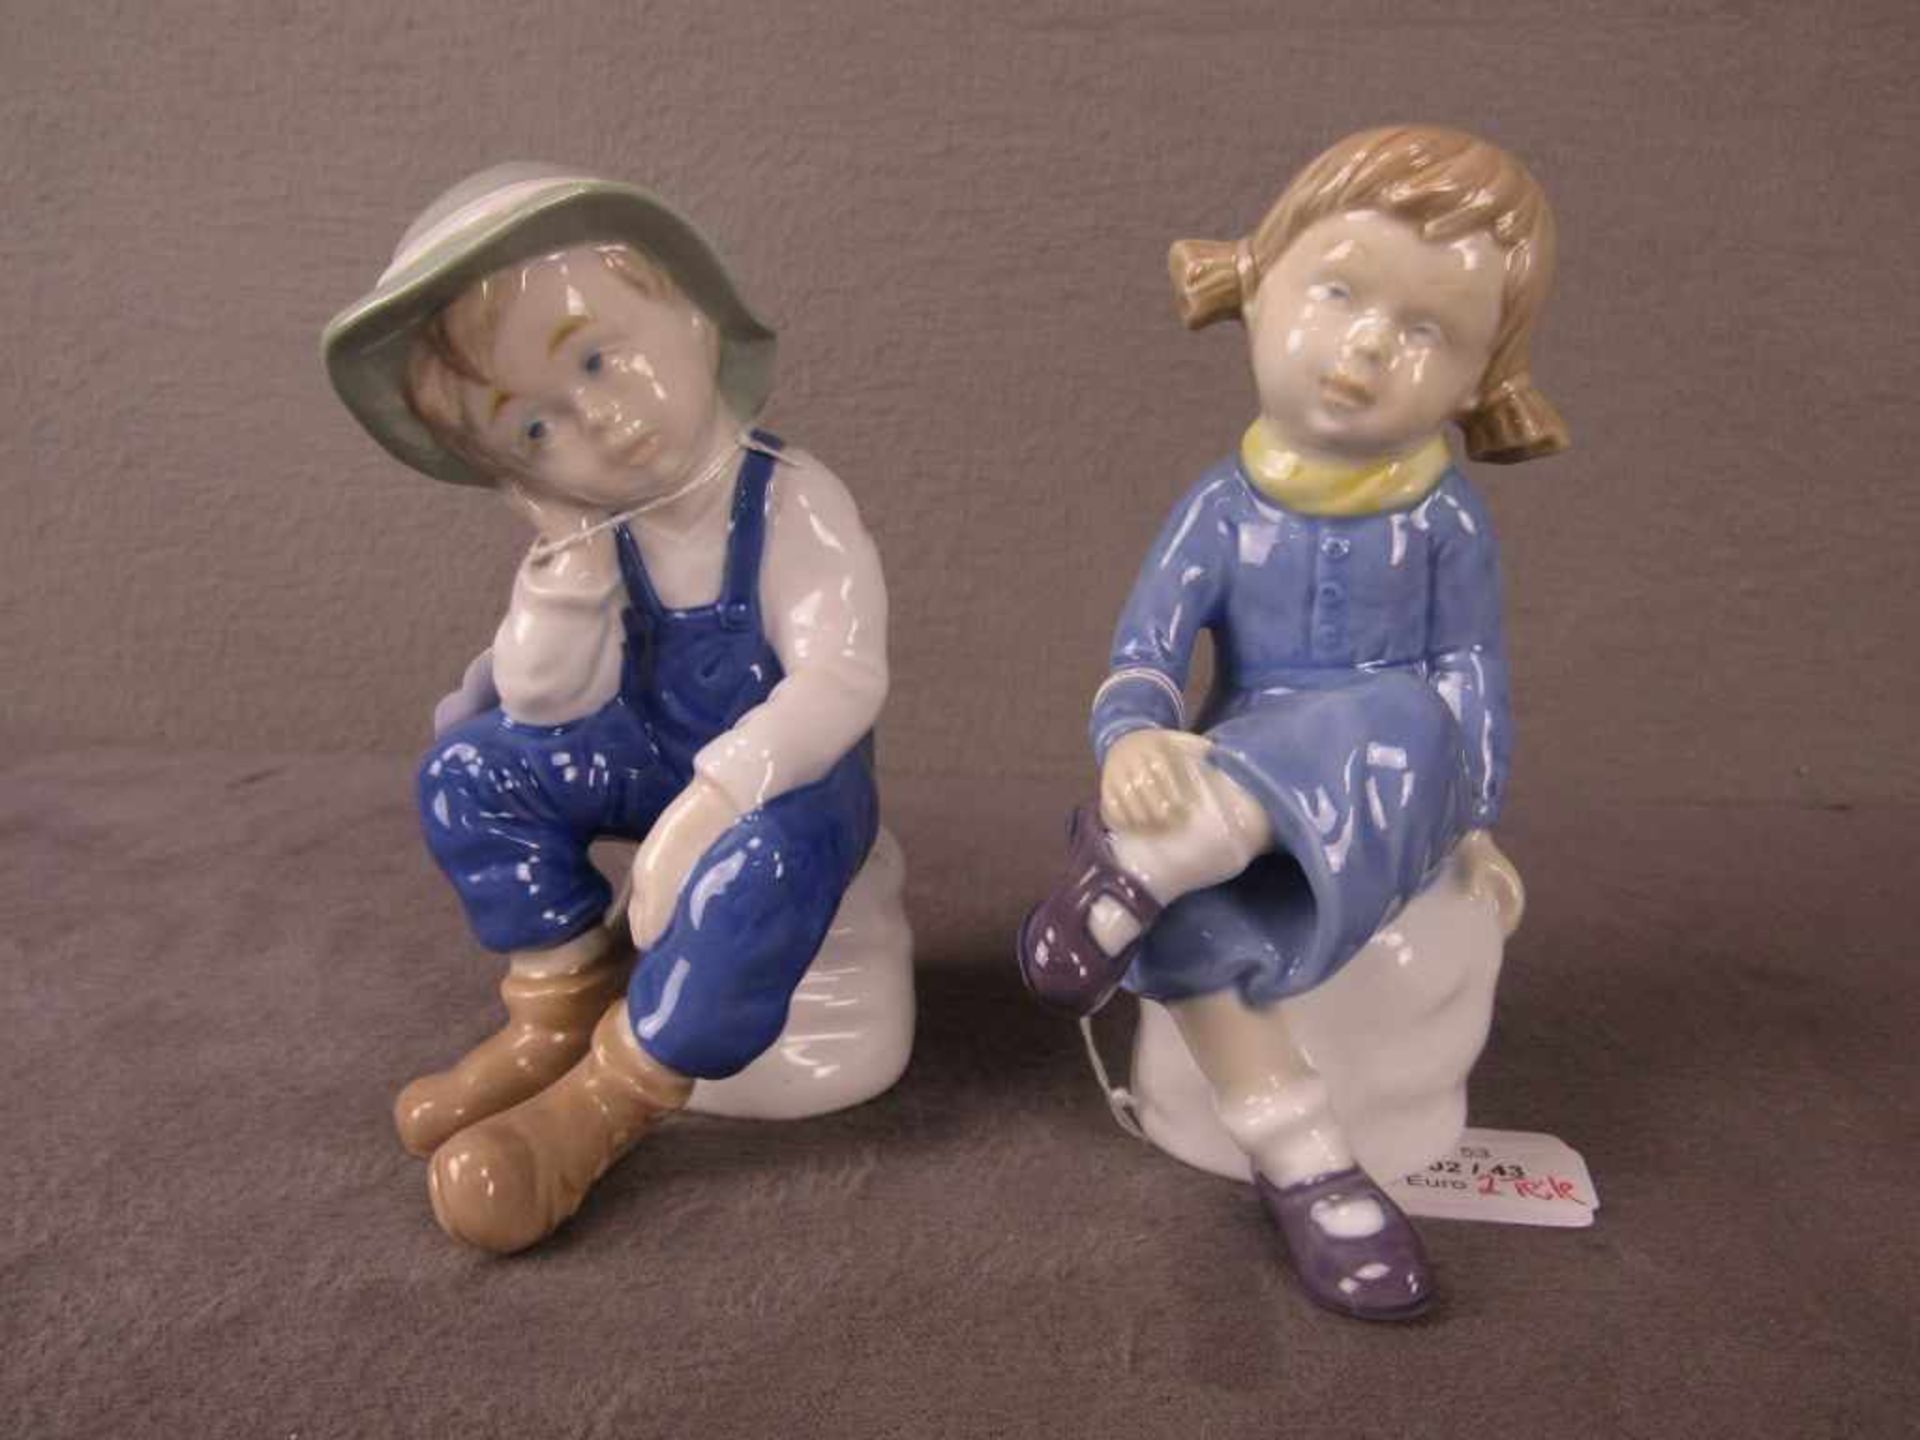 Pärchen Porzellanfiguren zwei Stück nachdenkliche sitzende Kinder ca.16cm hoch Hersteller